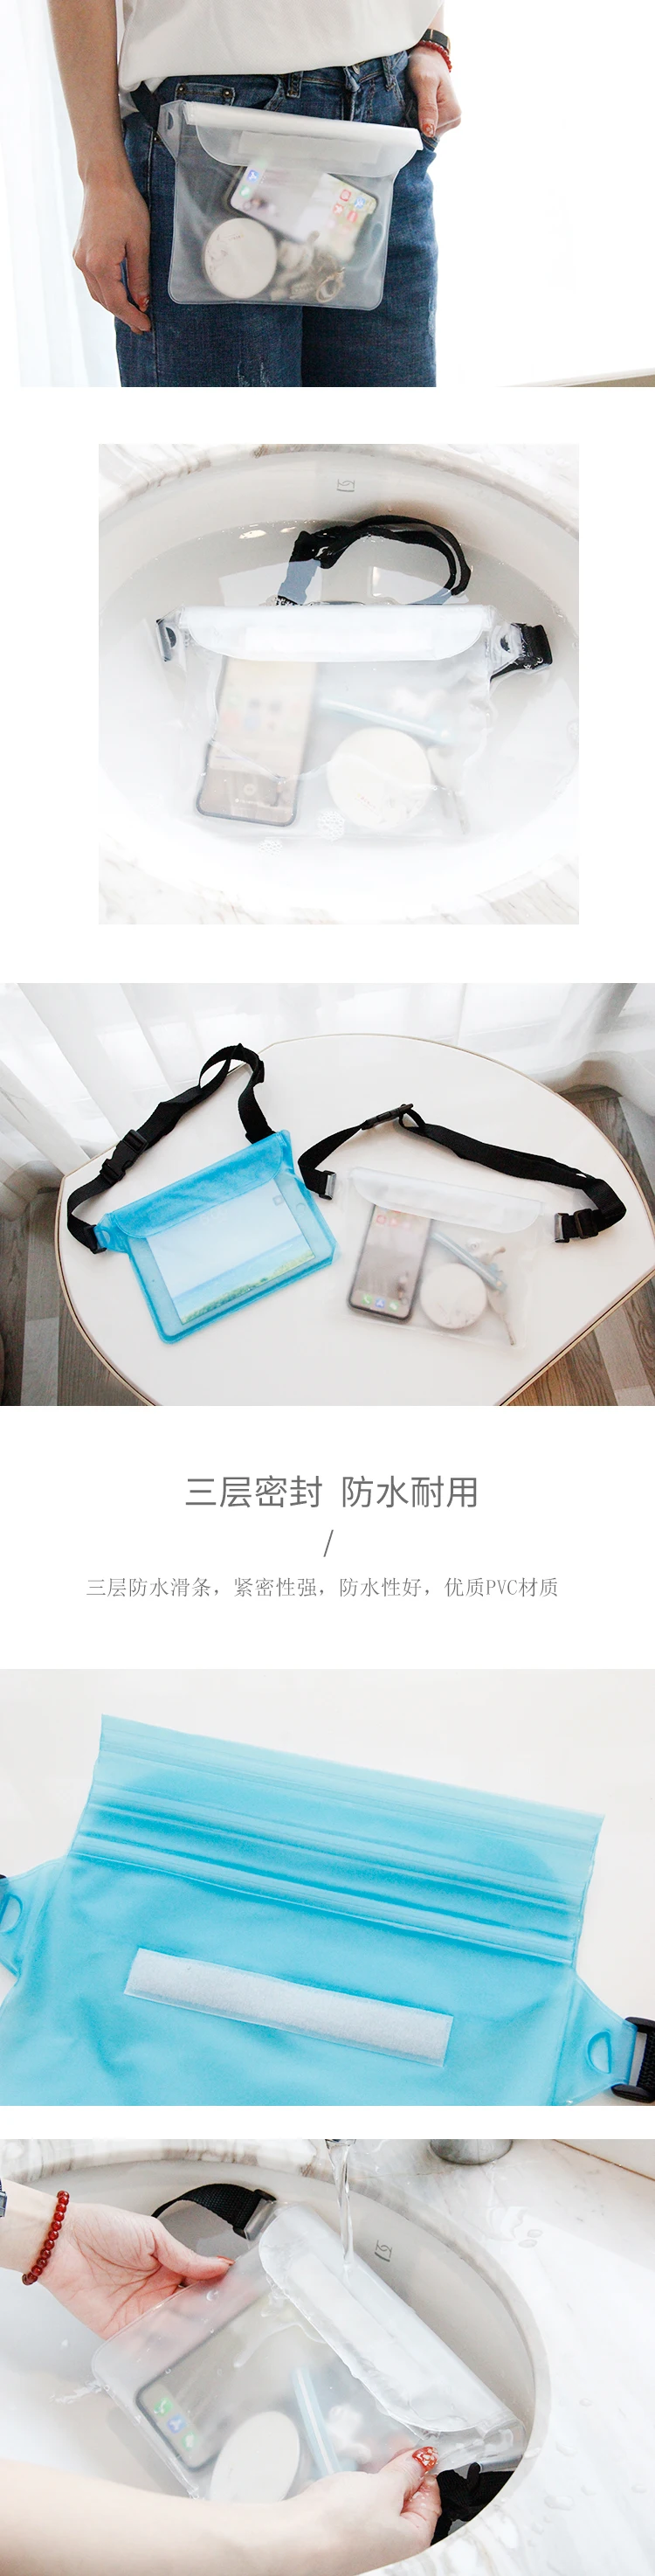 Водонепроницаемый дрейф дайвинг плавательный мешок подводный сухой плечо поясная сумка карманная сумка для мобильного чехол для телефона чехол/камера